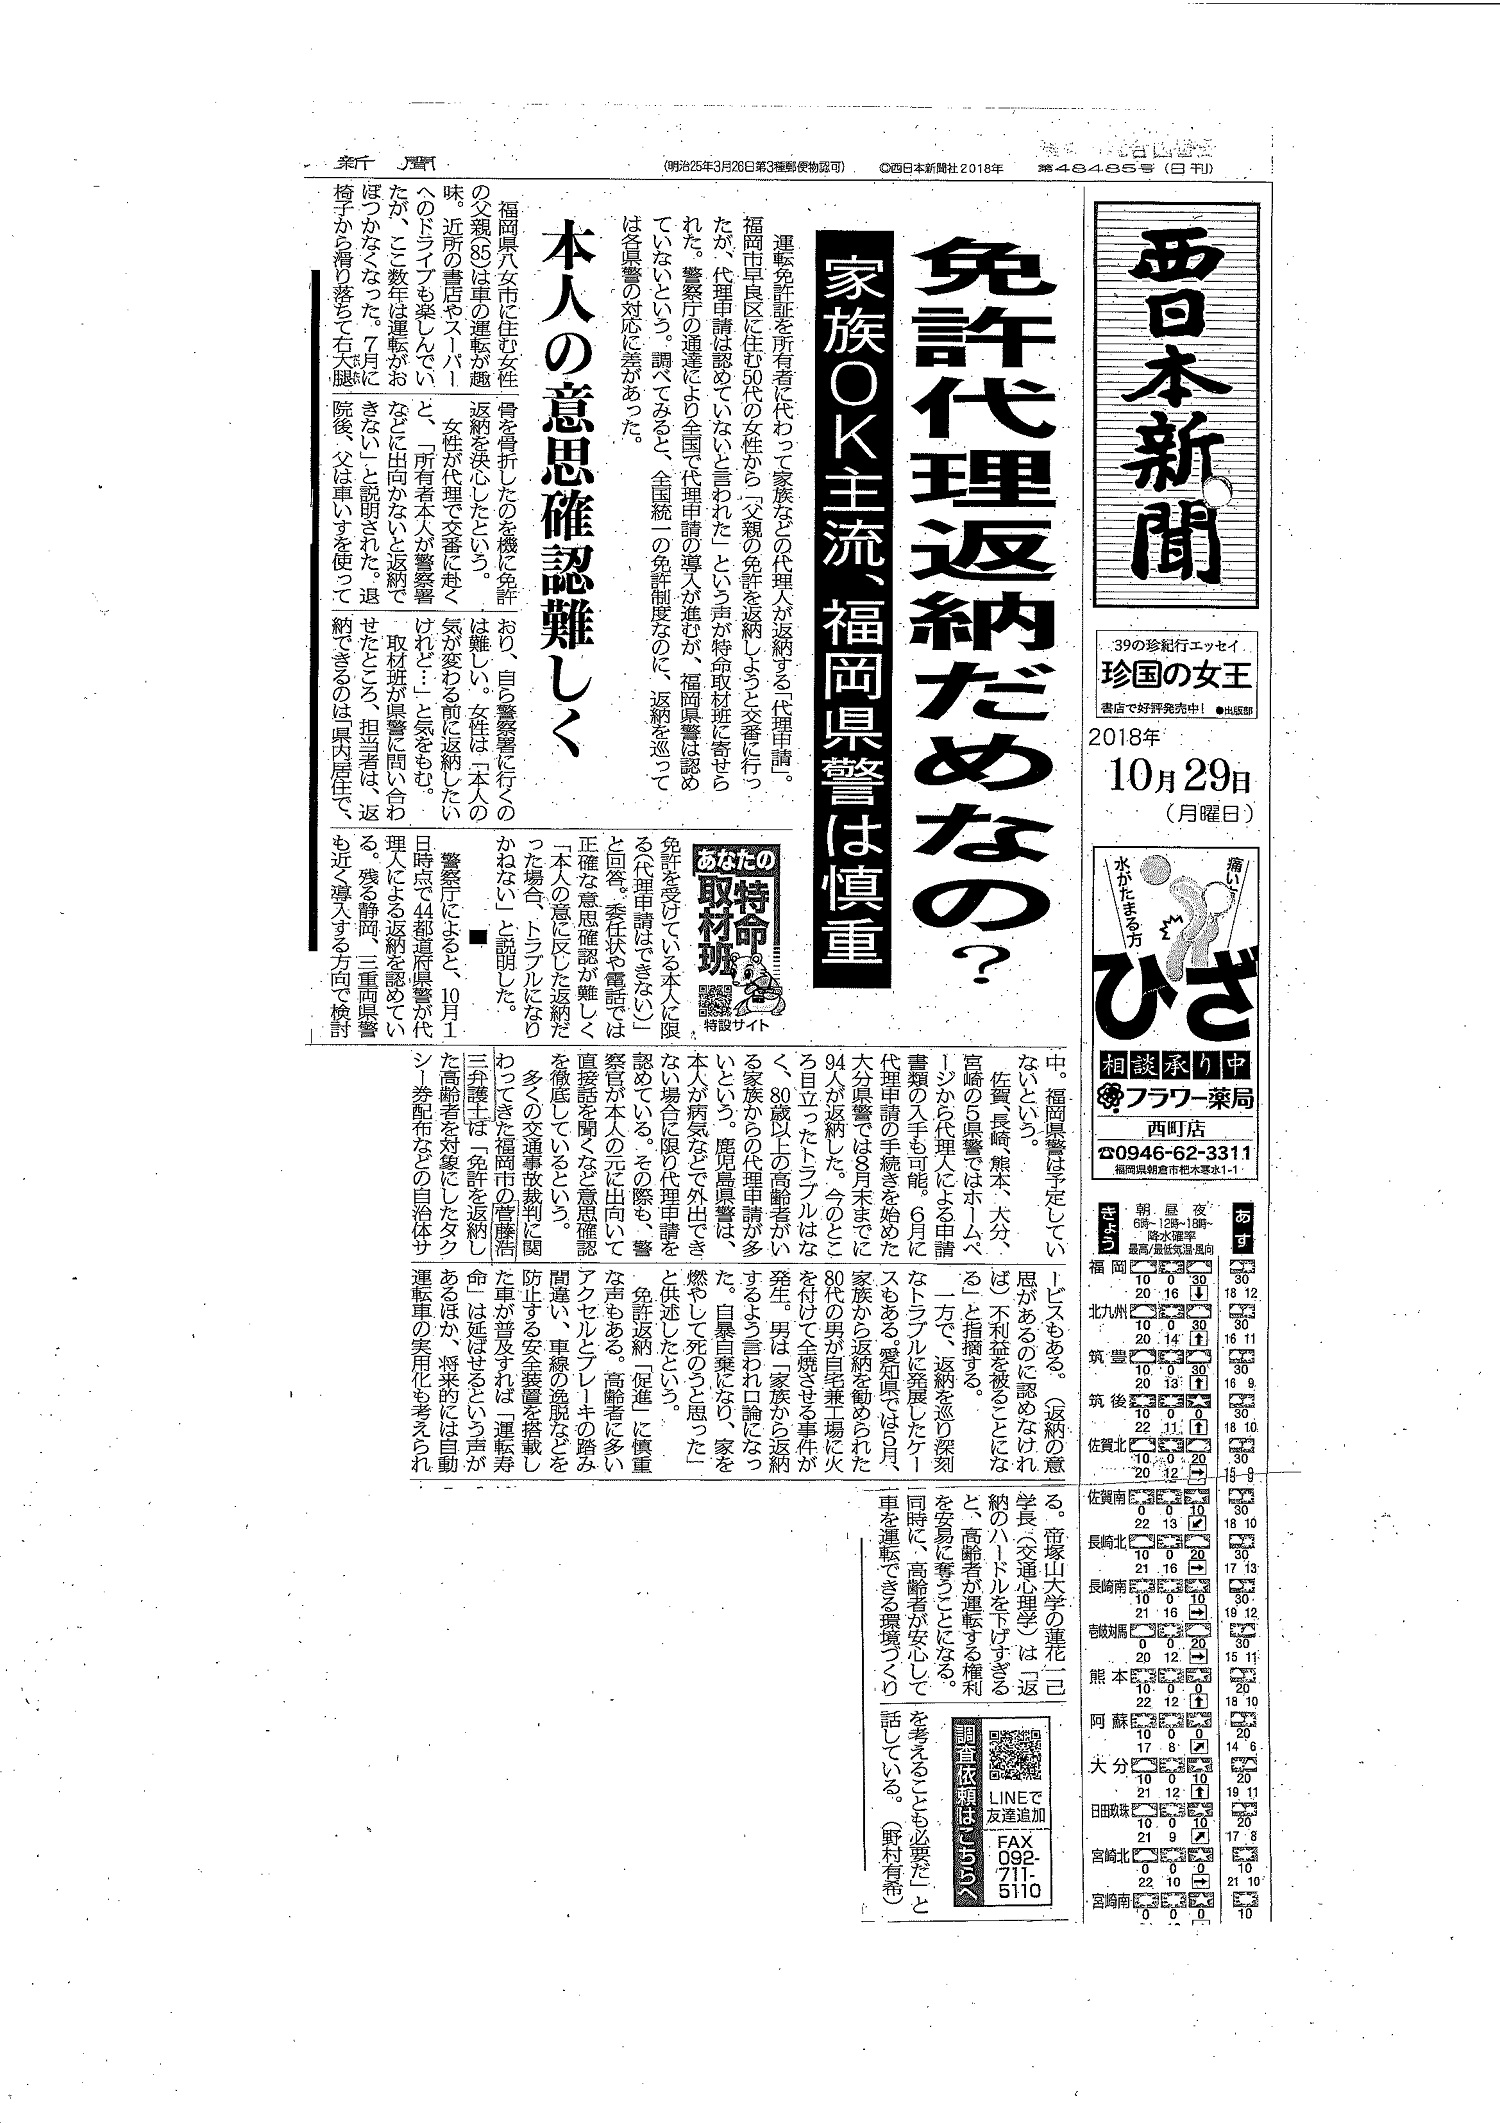 交通法規の専門家として西日本新聞に取材され朝刊1面に掲載されました